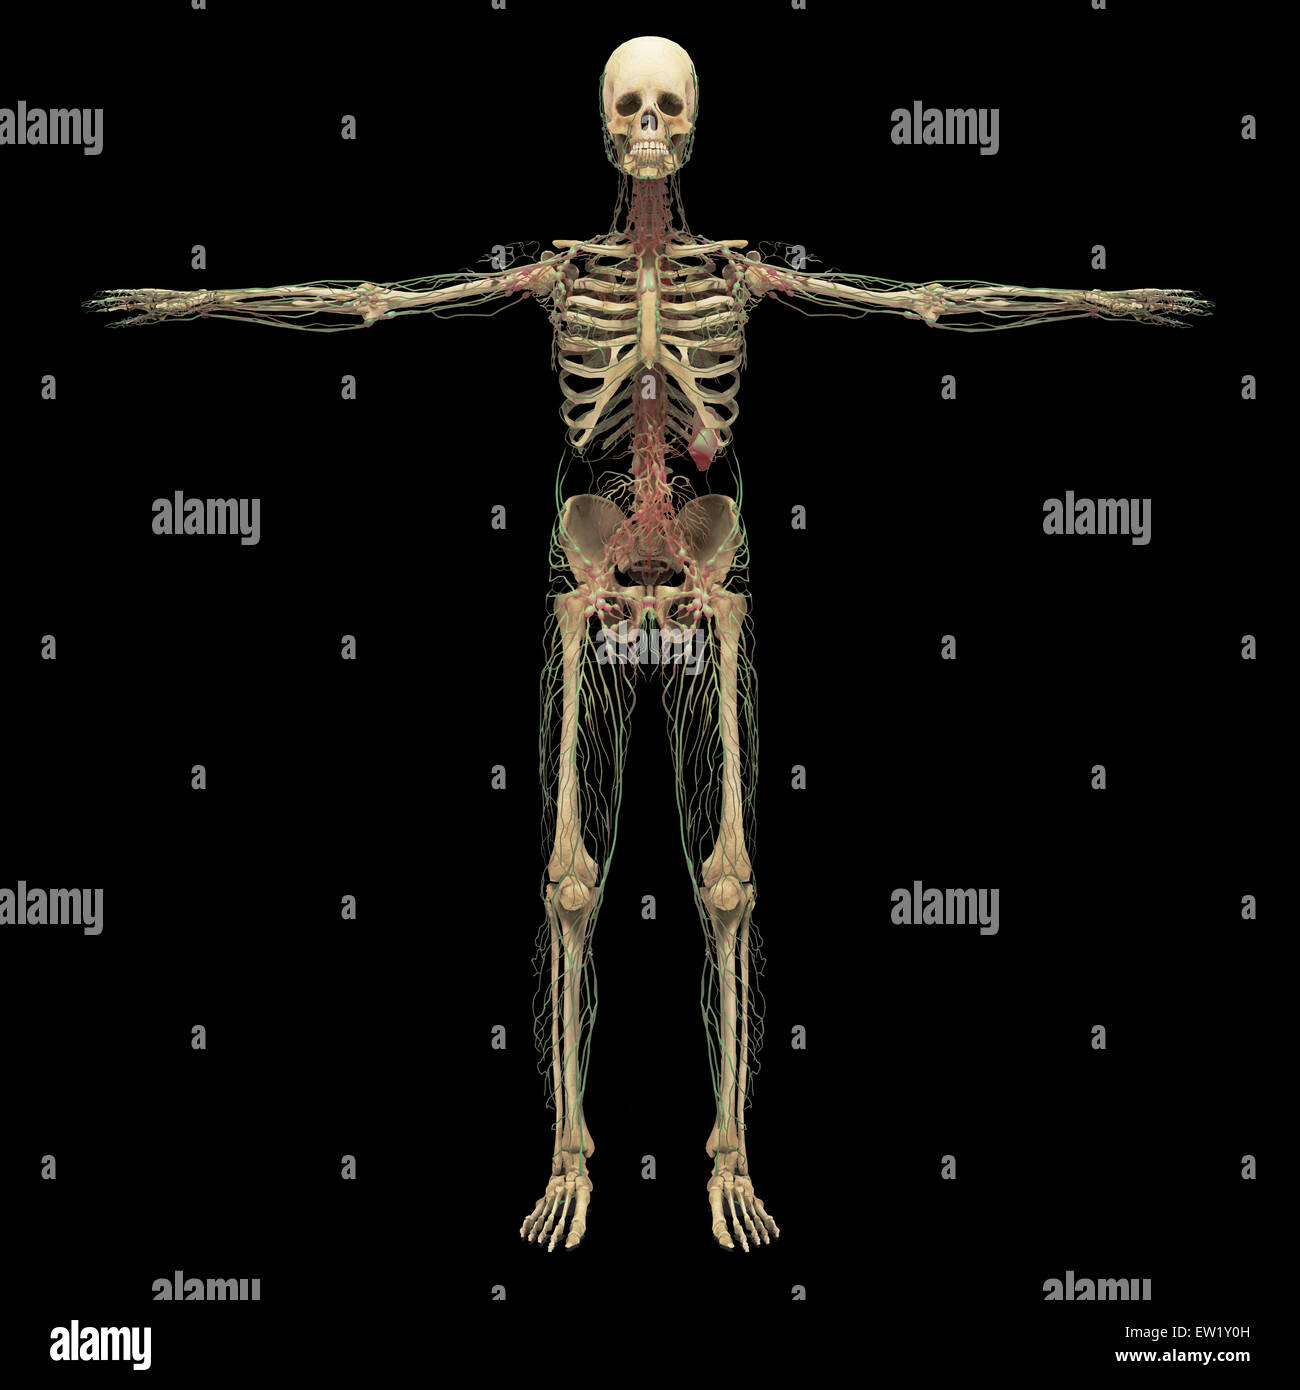 Representación 3D del sistema linfático humano con el esqueleto. Foto de stock